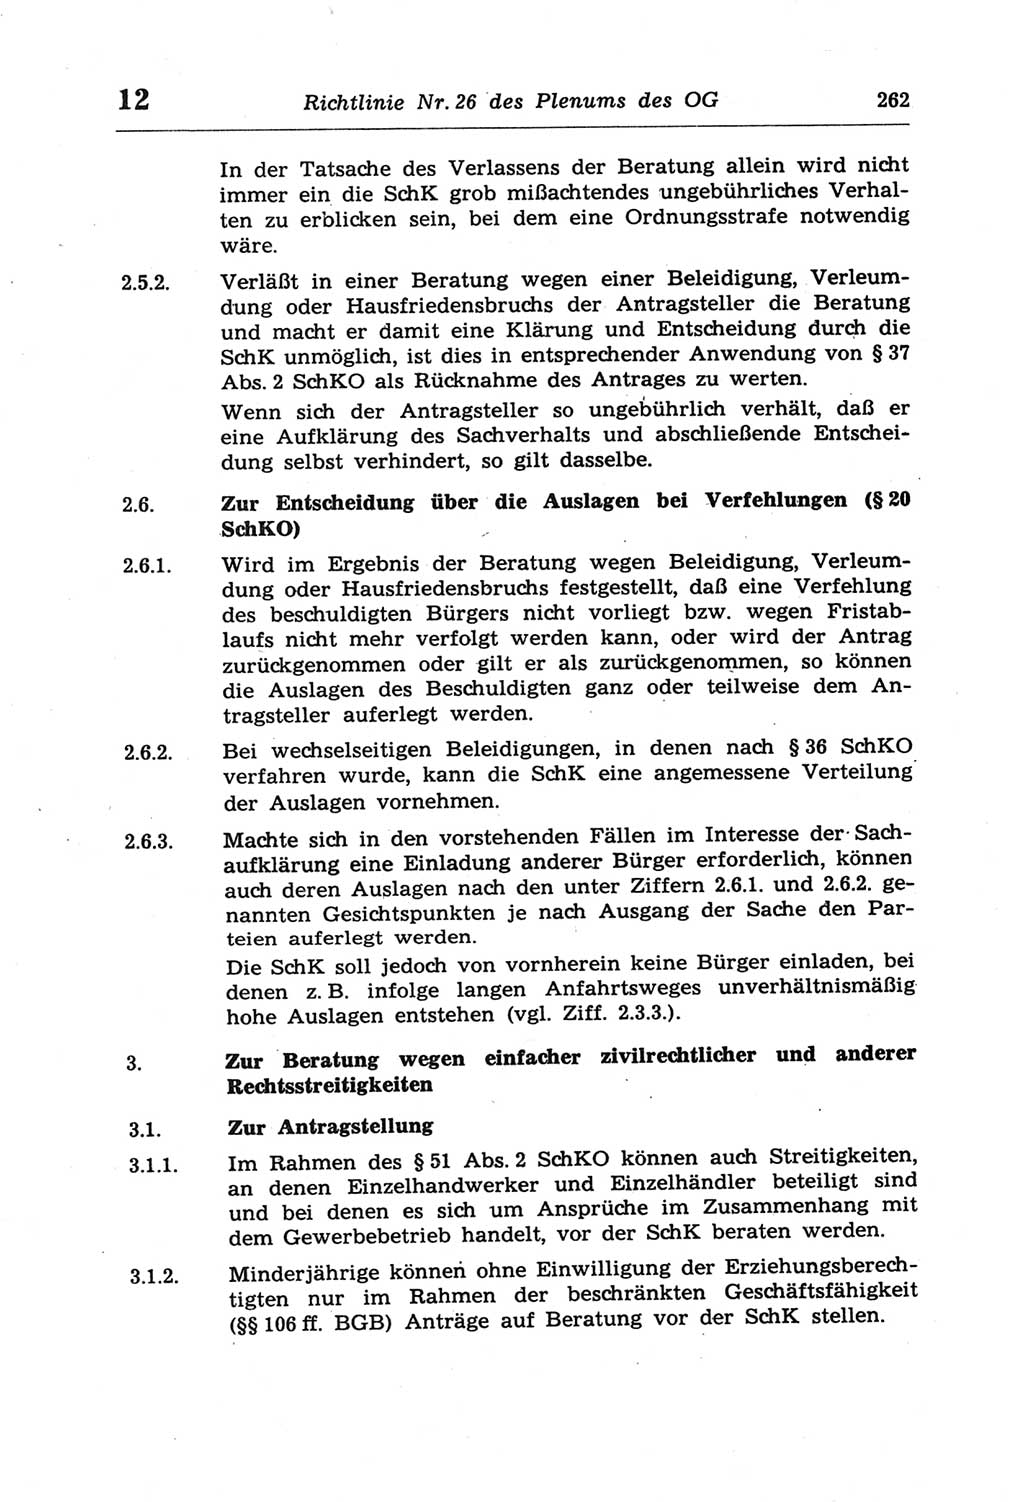 Strafprozeßordnung (StPO) der Deutschen Demokratischen Republik (DDR) und angrenzende Gesetze und Bestimmungen 1968, Seite 262 (StPO Ges. Bstgn. DDR 1968, S. 262)